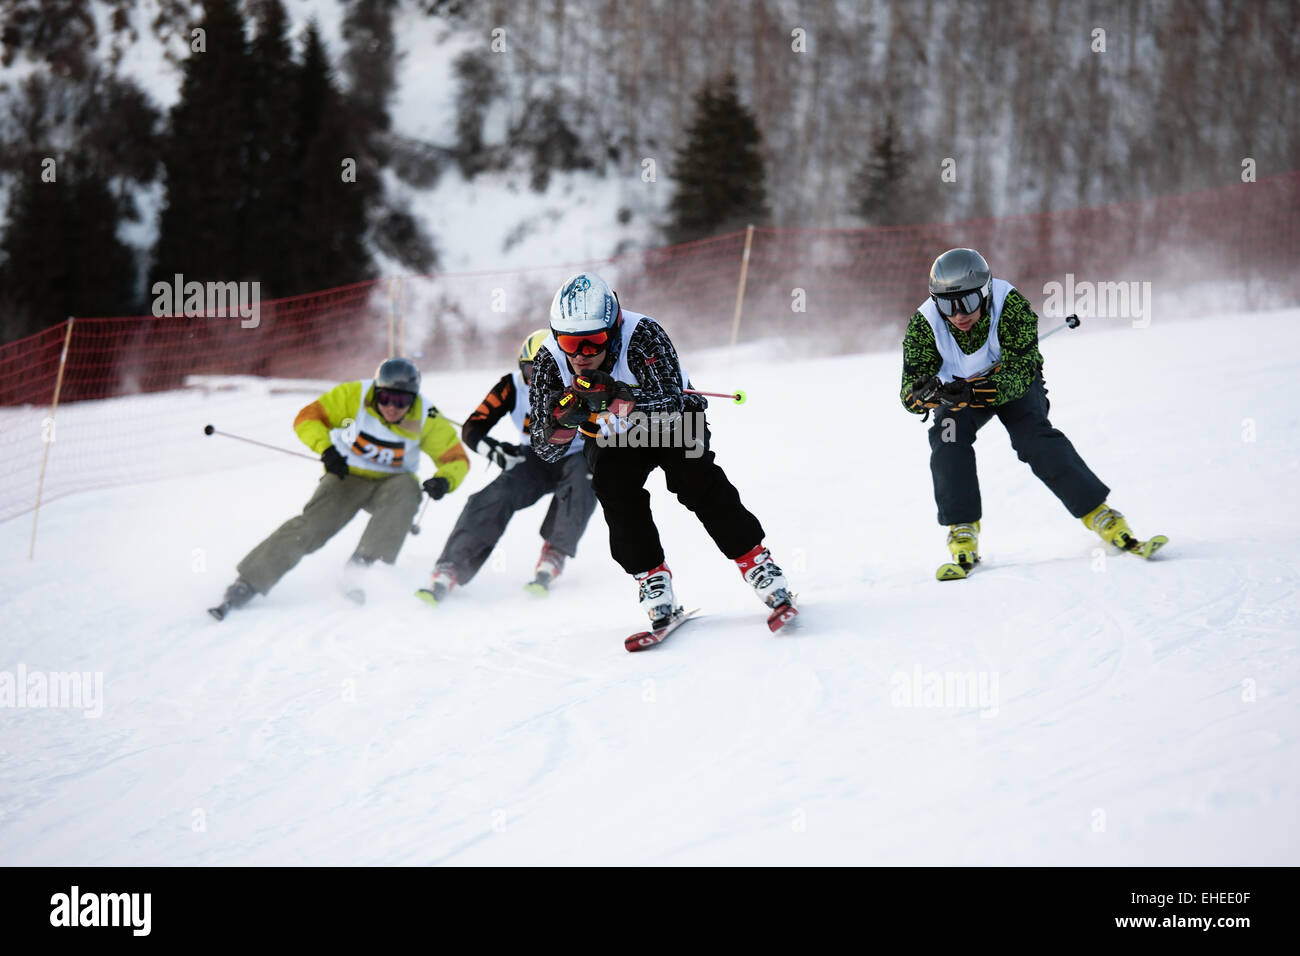 L'hiver ski et la concurrence bordercross Banque D'Images